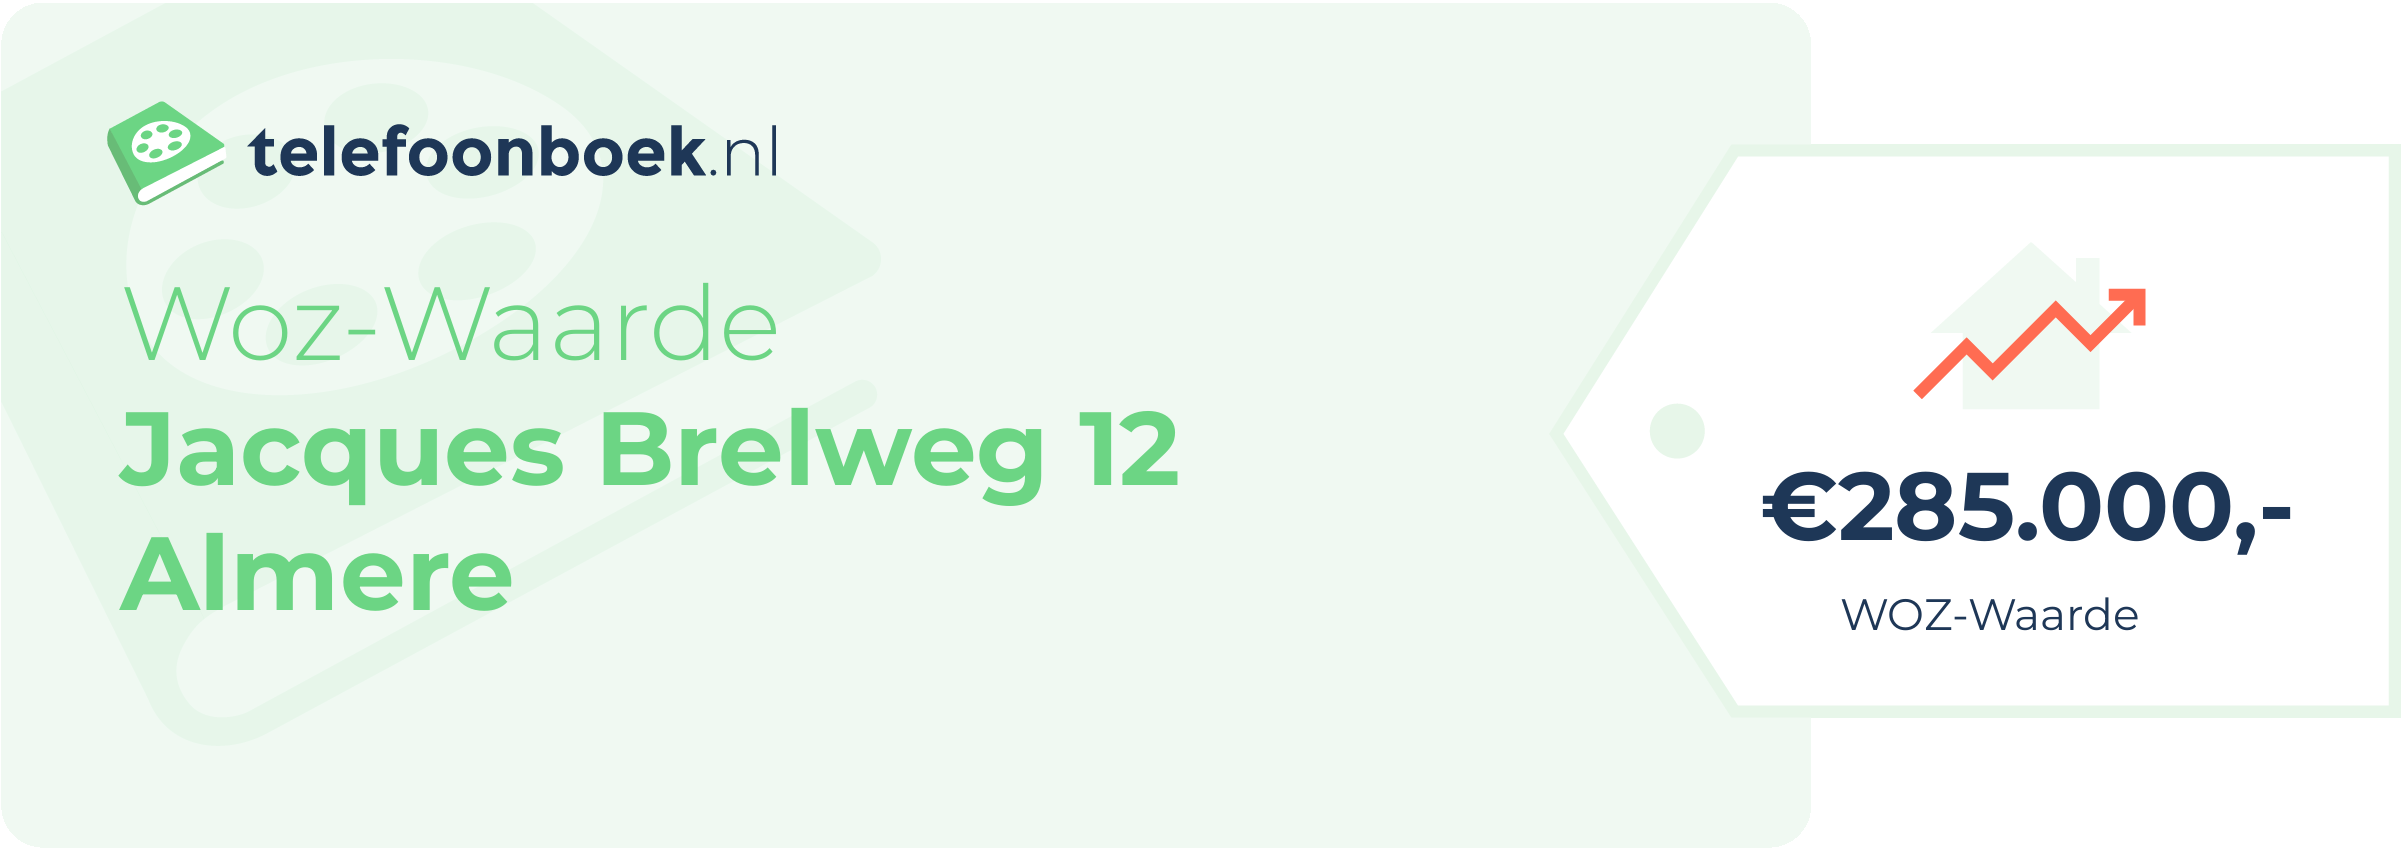 WOZ-waarde Jacques Brelweg 12 Almere